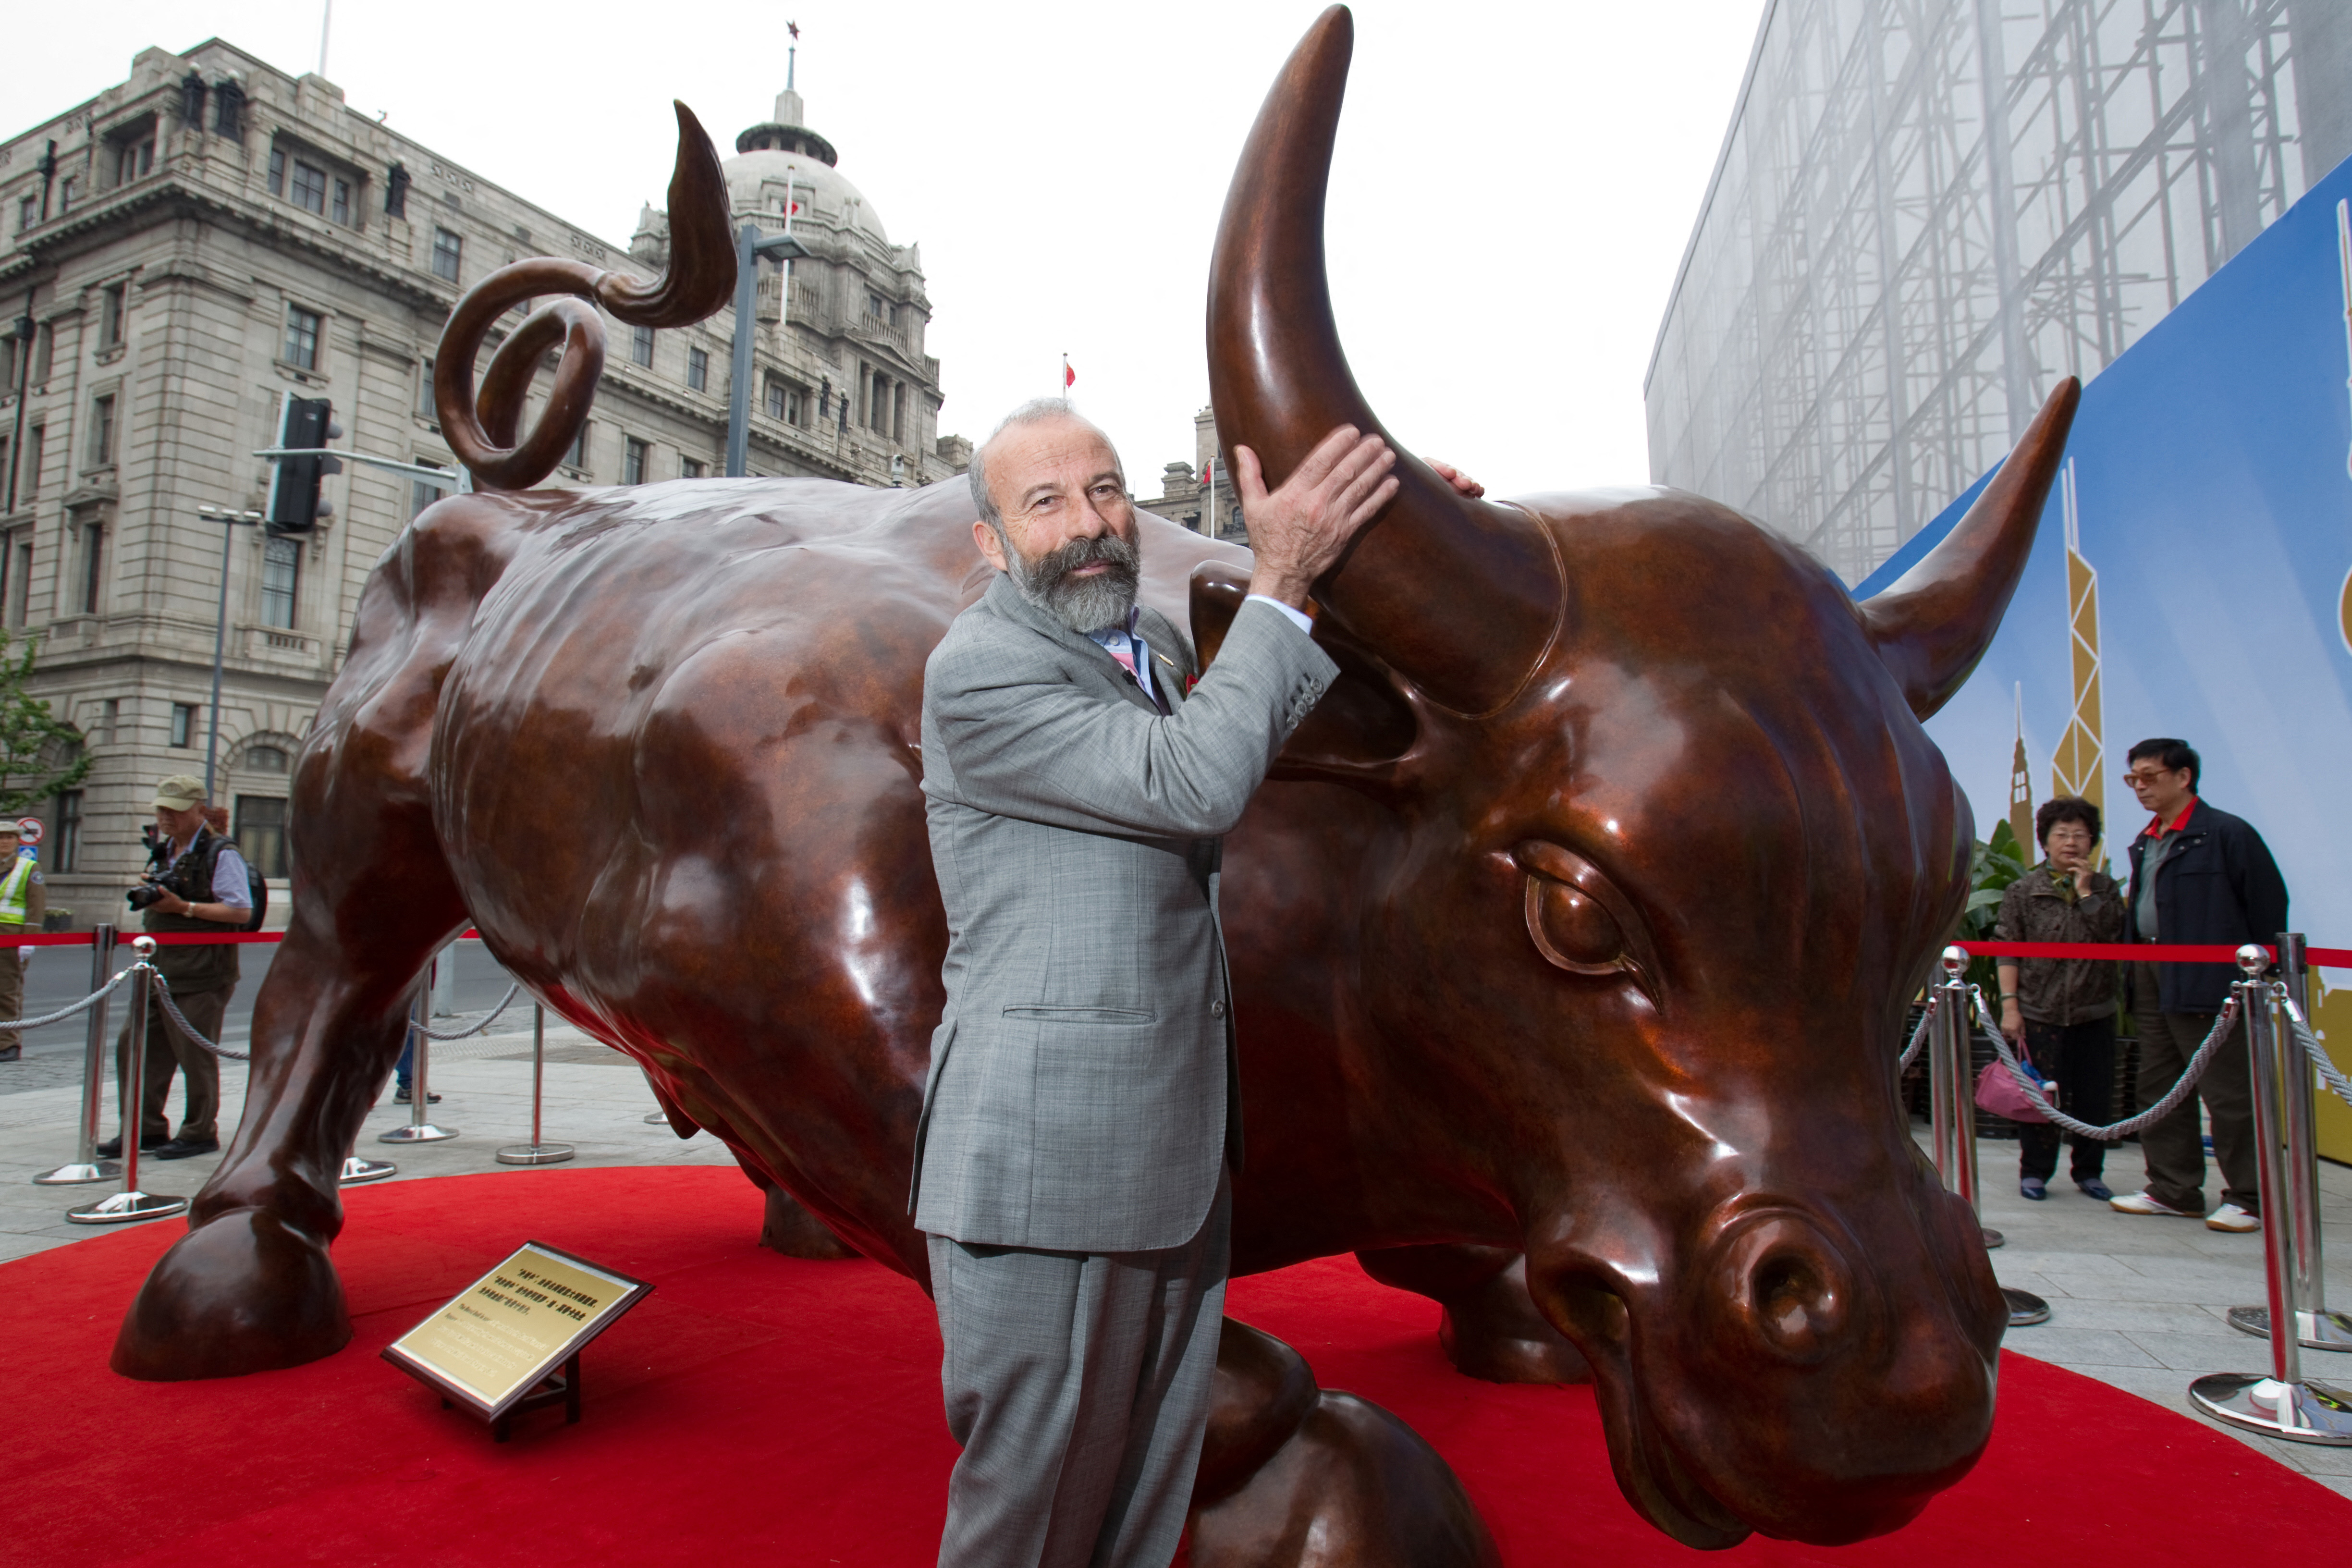 China-finance-art-Shanghai-bull
El escultor siciliano Arturo Di Modica, autor de la famosa obra en Nueva York, murió a los 80 años en la noche del viernes al sábado. Foto: AFP